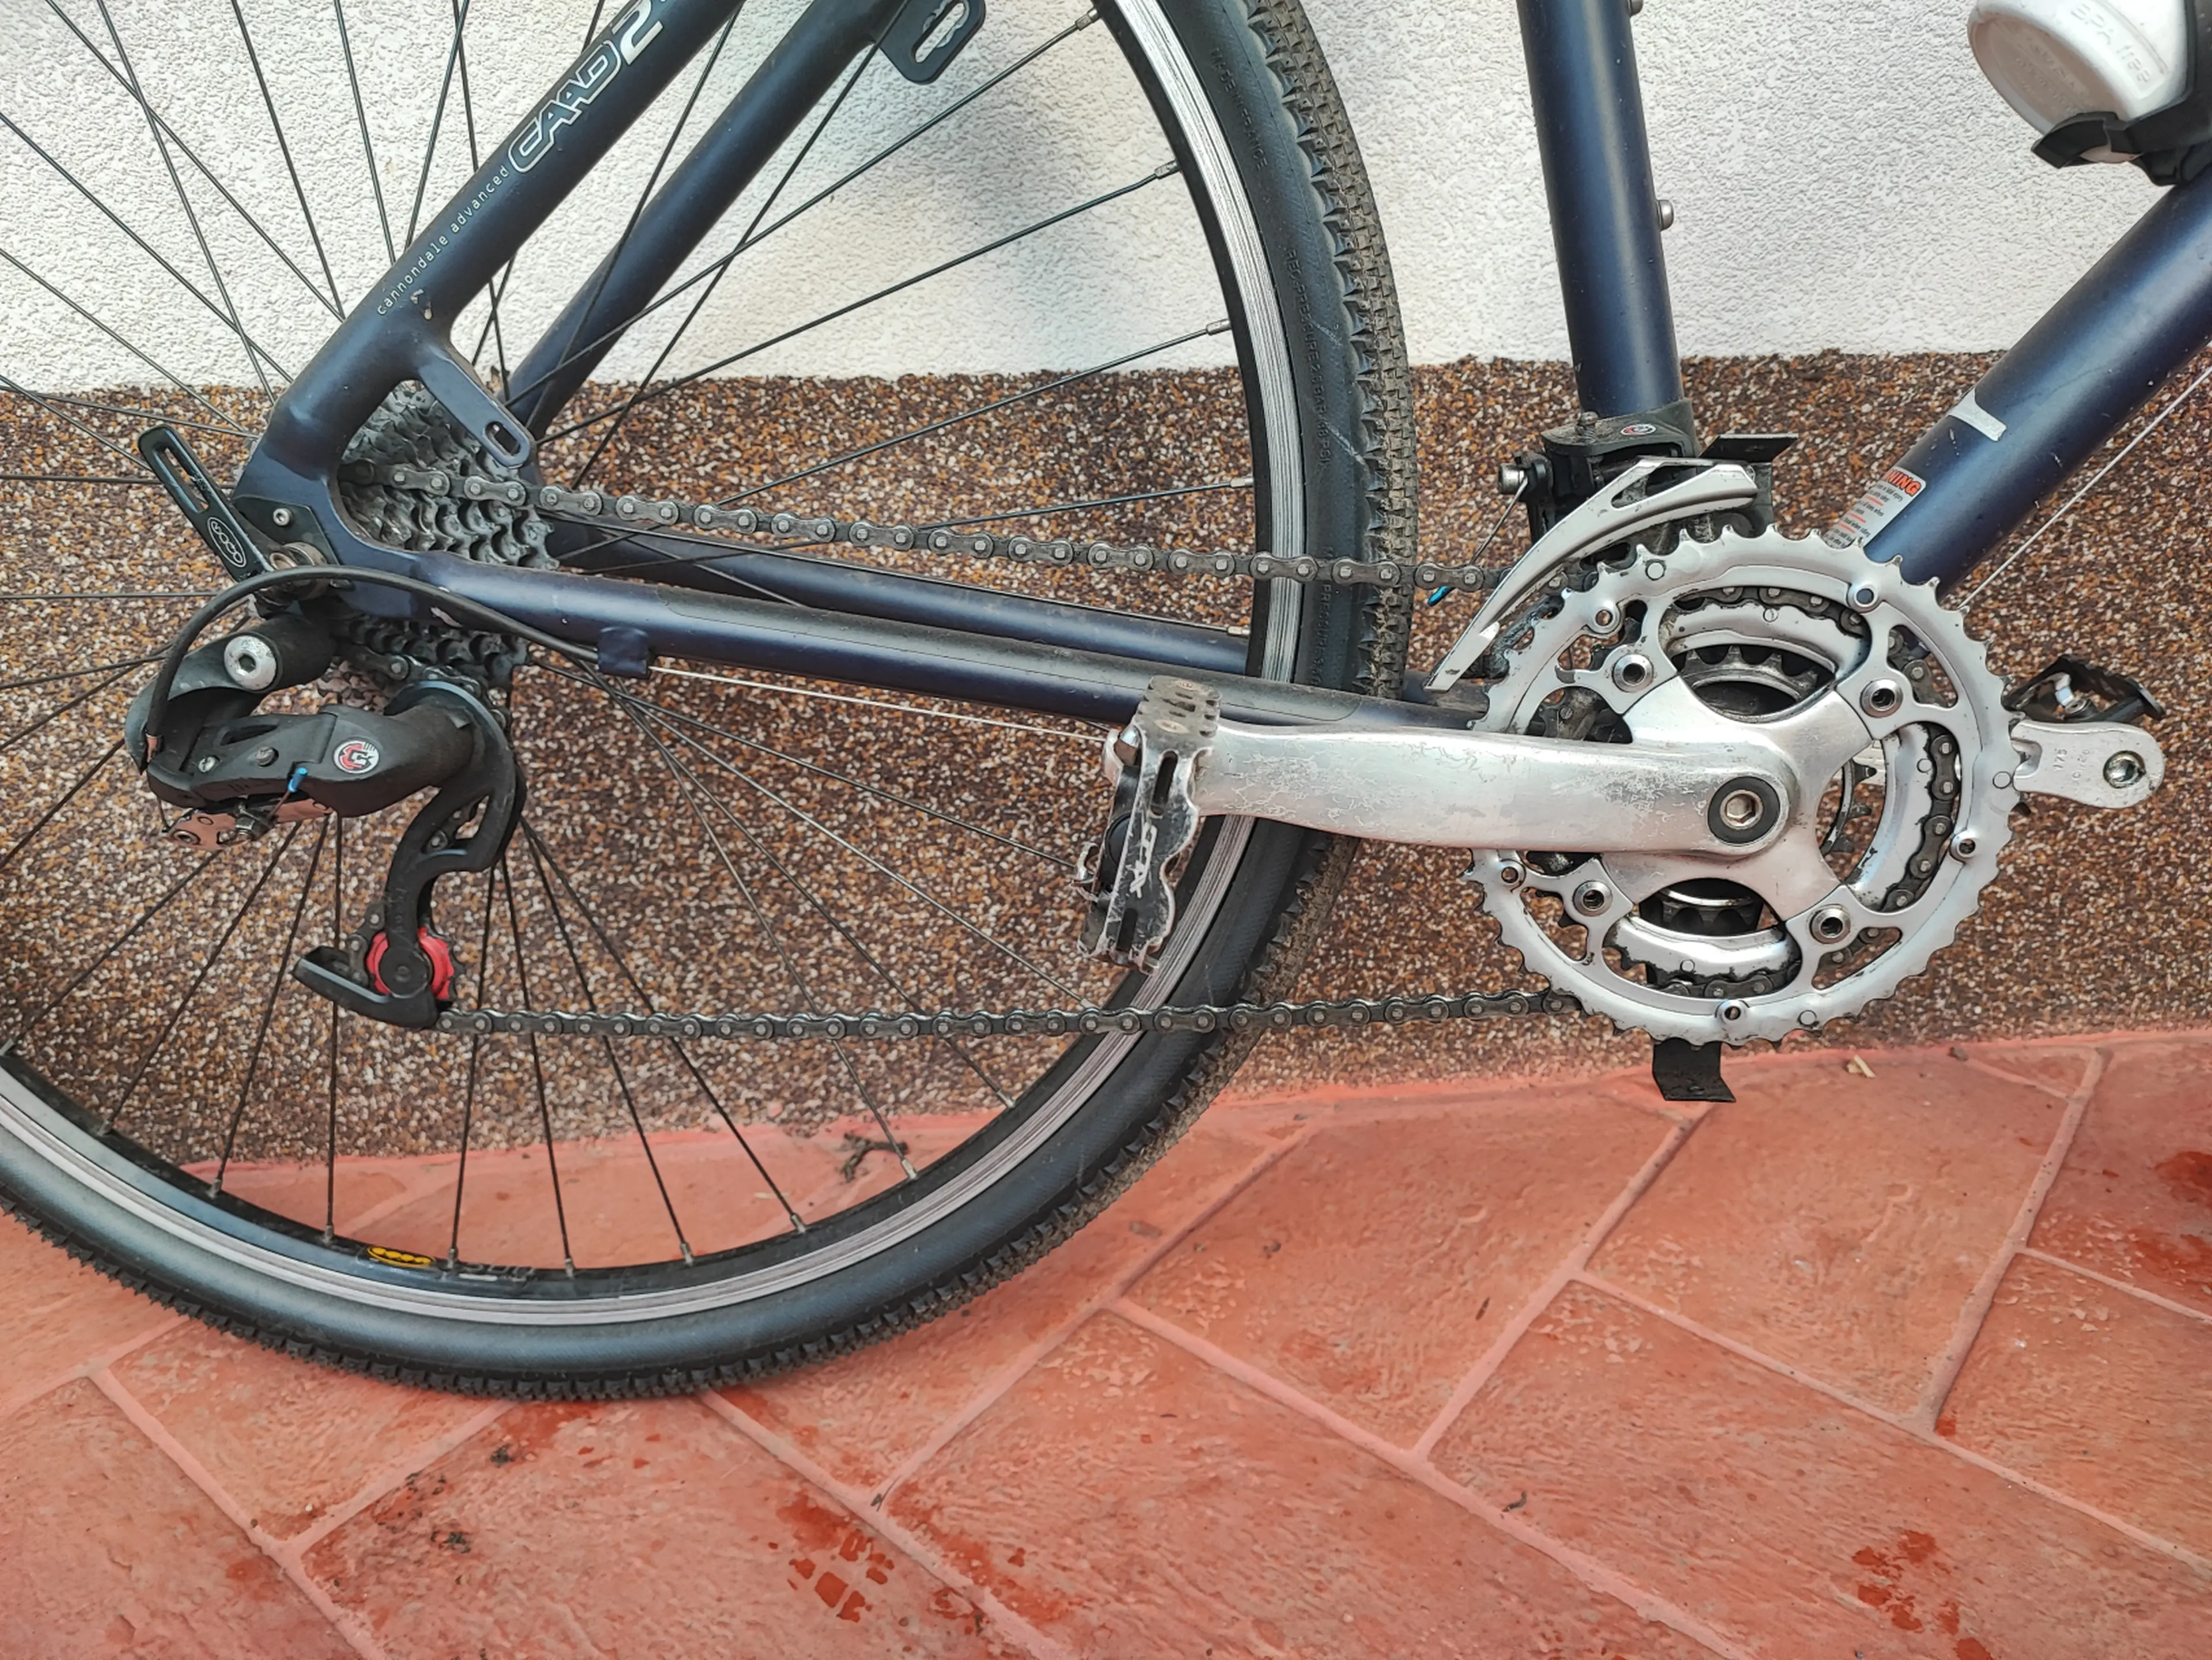 5. Bicicleta Cannondale vintage/classic Silk City